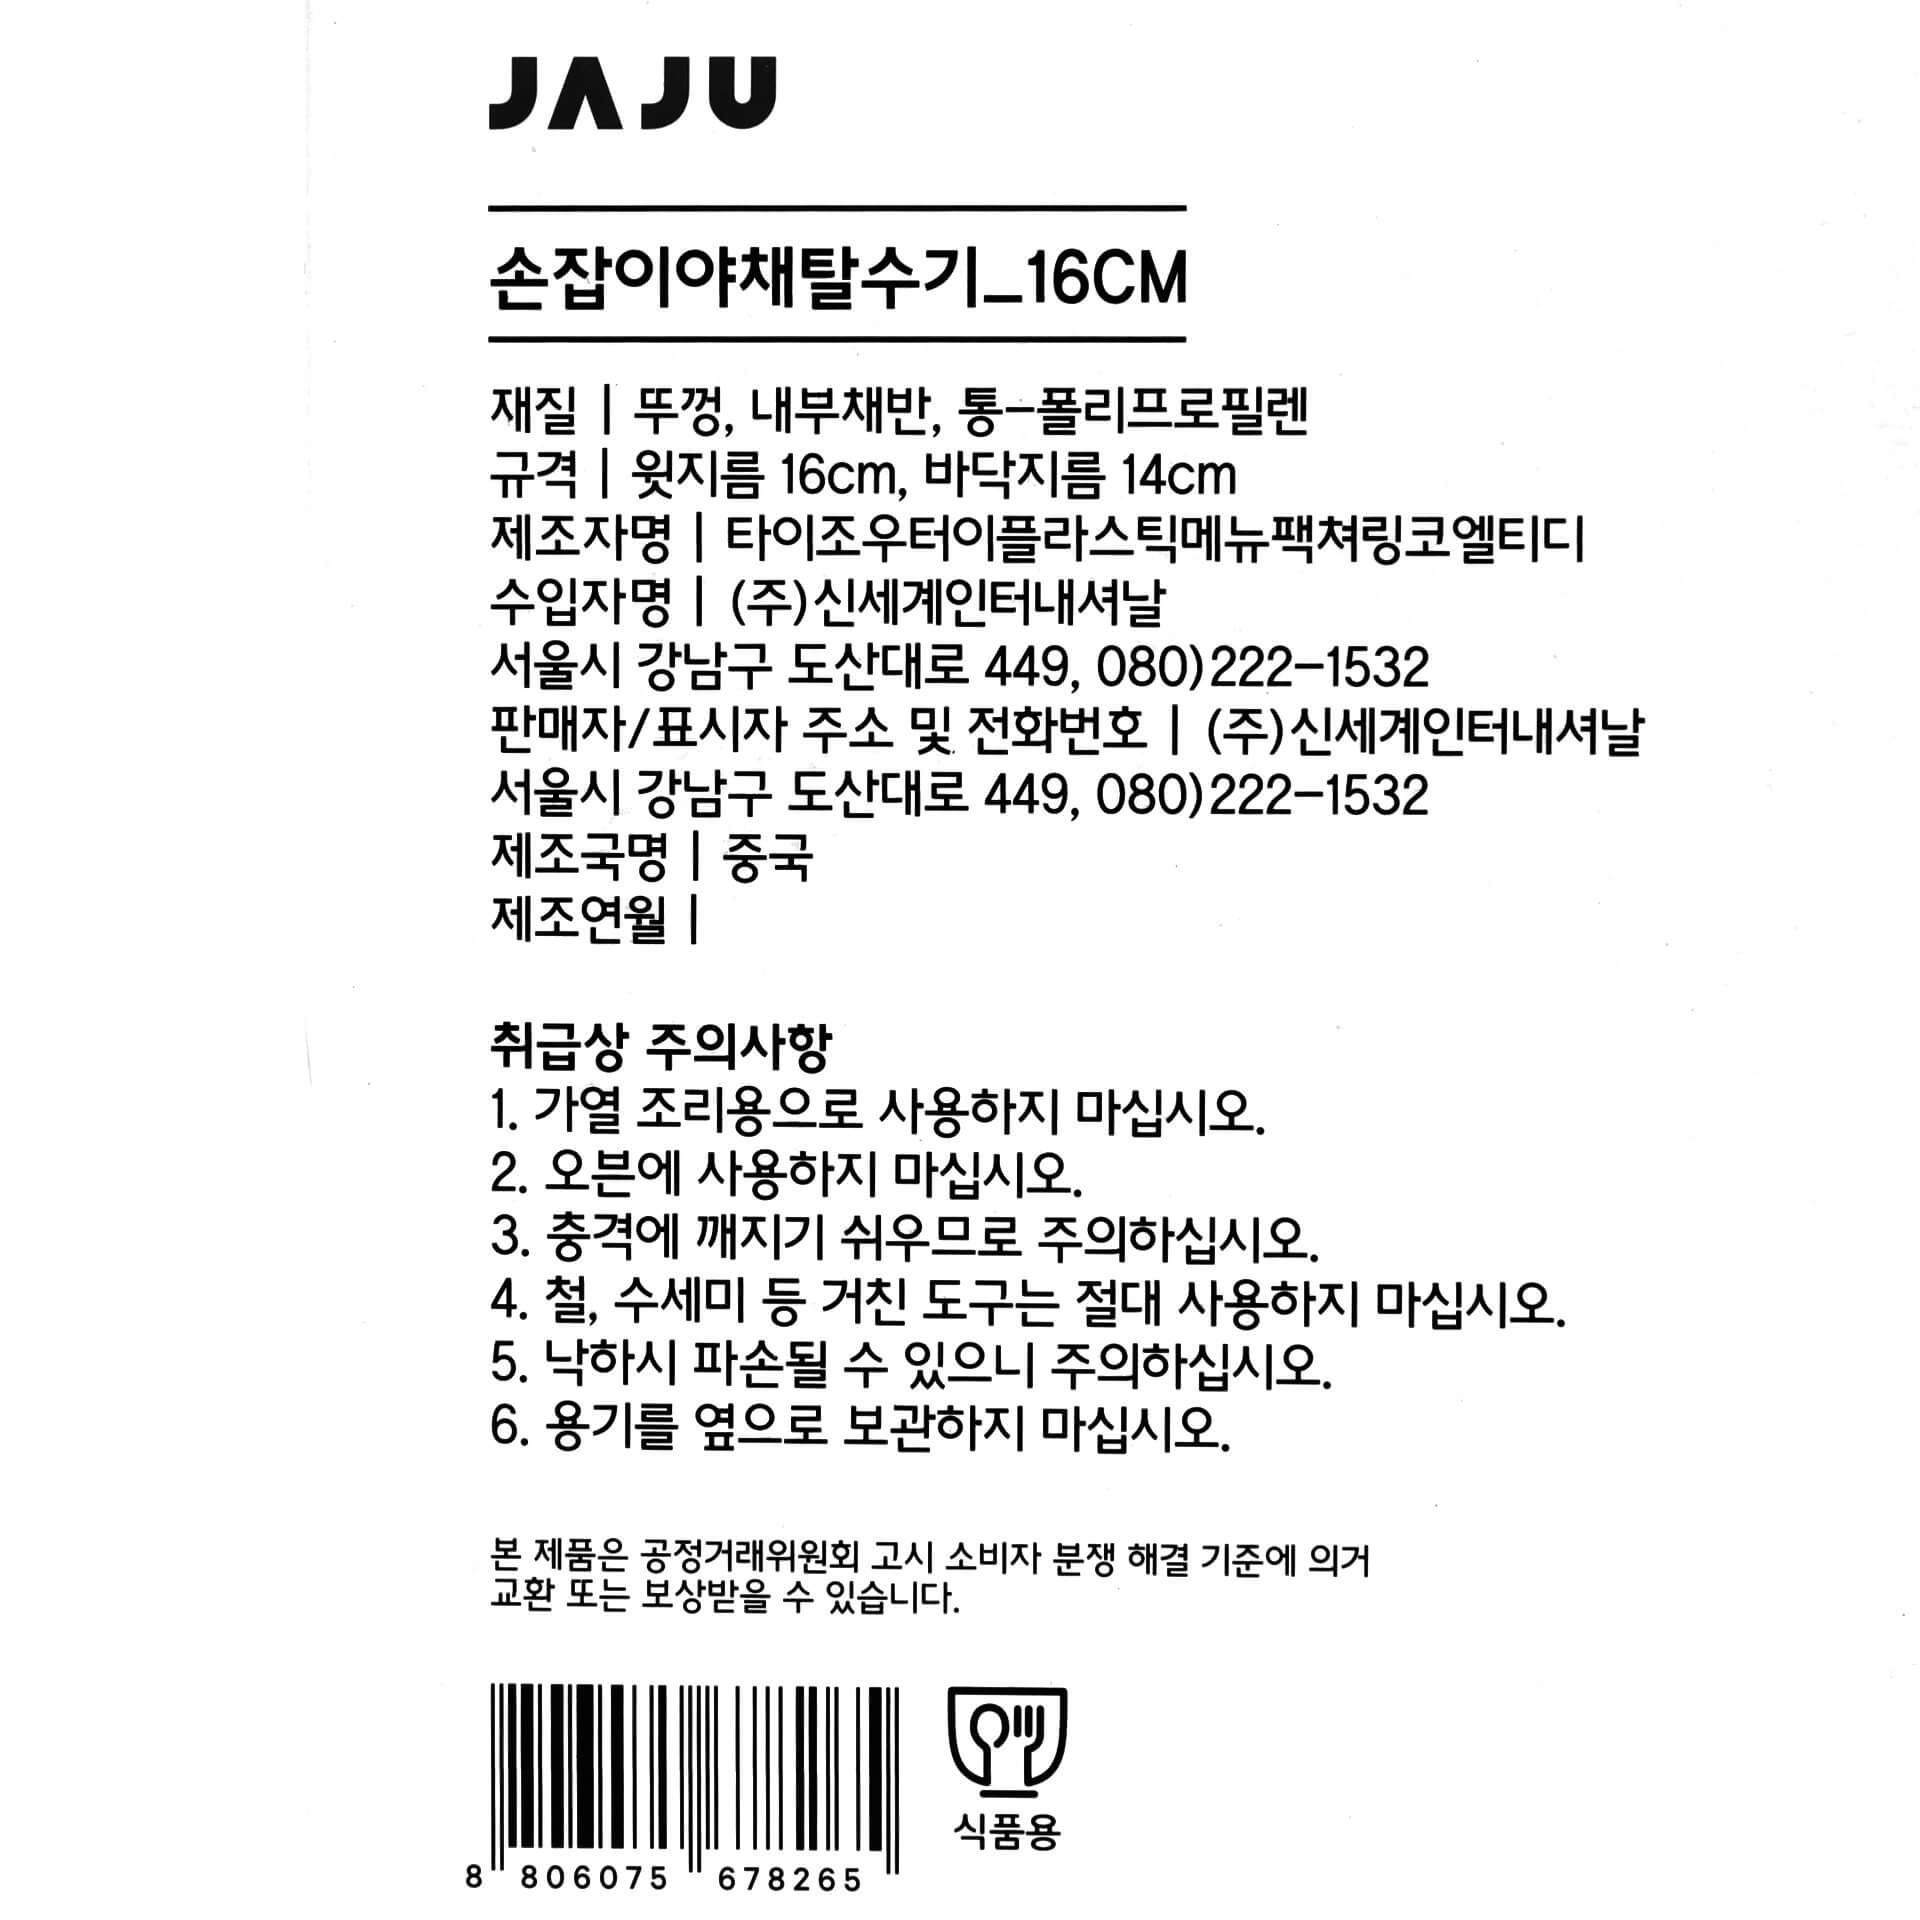 韓國食品-[JAJU] Handle Salad Spinner 16CM